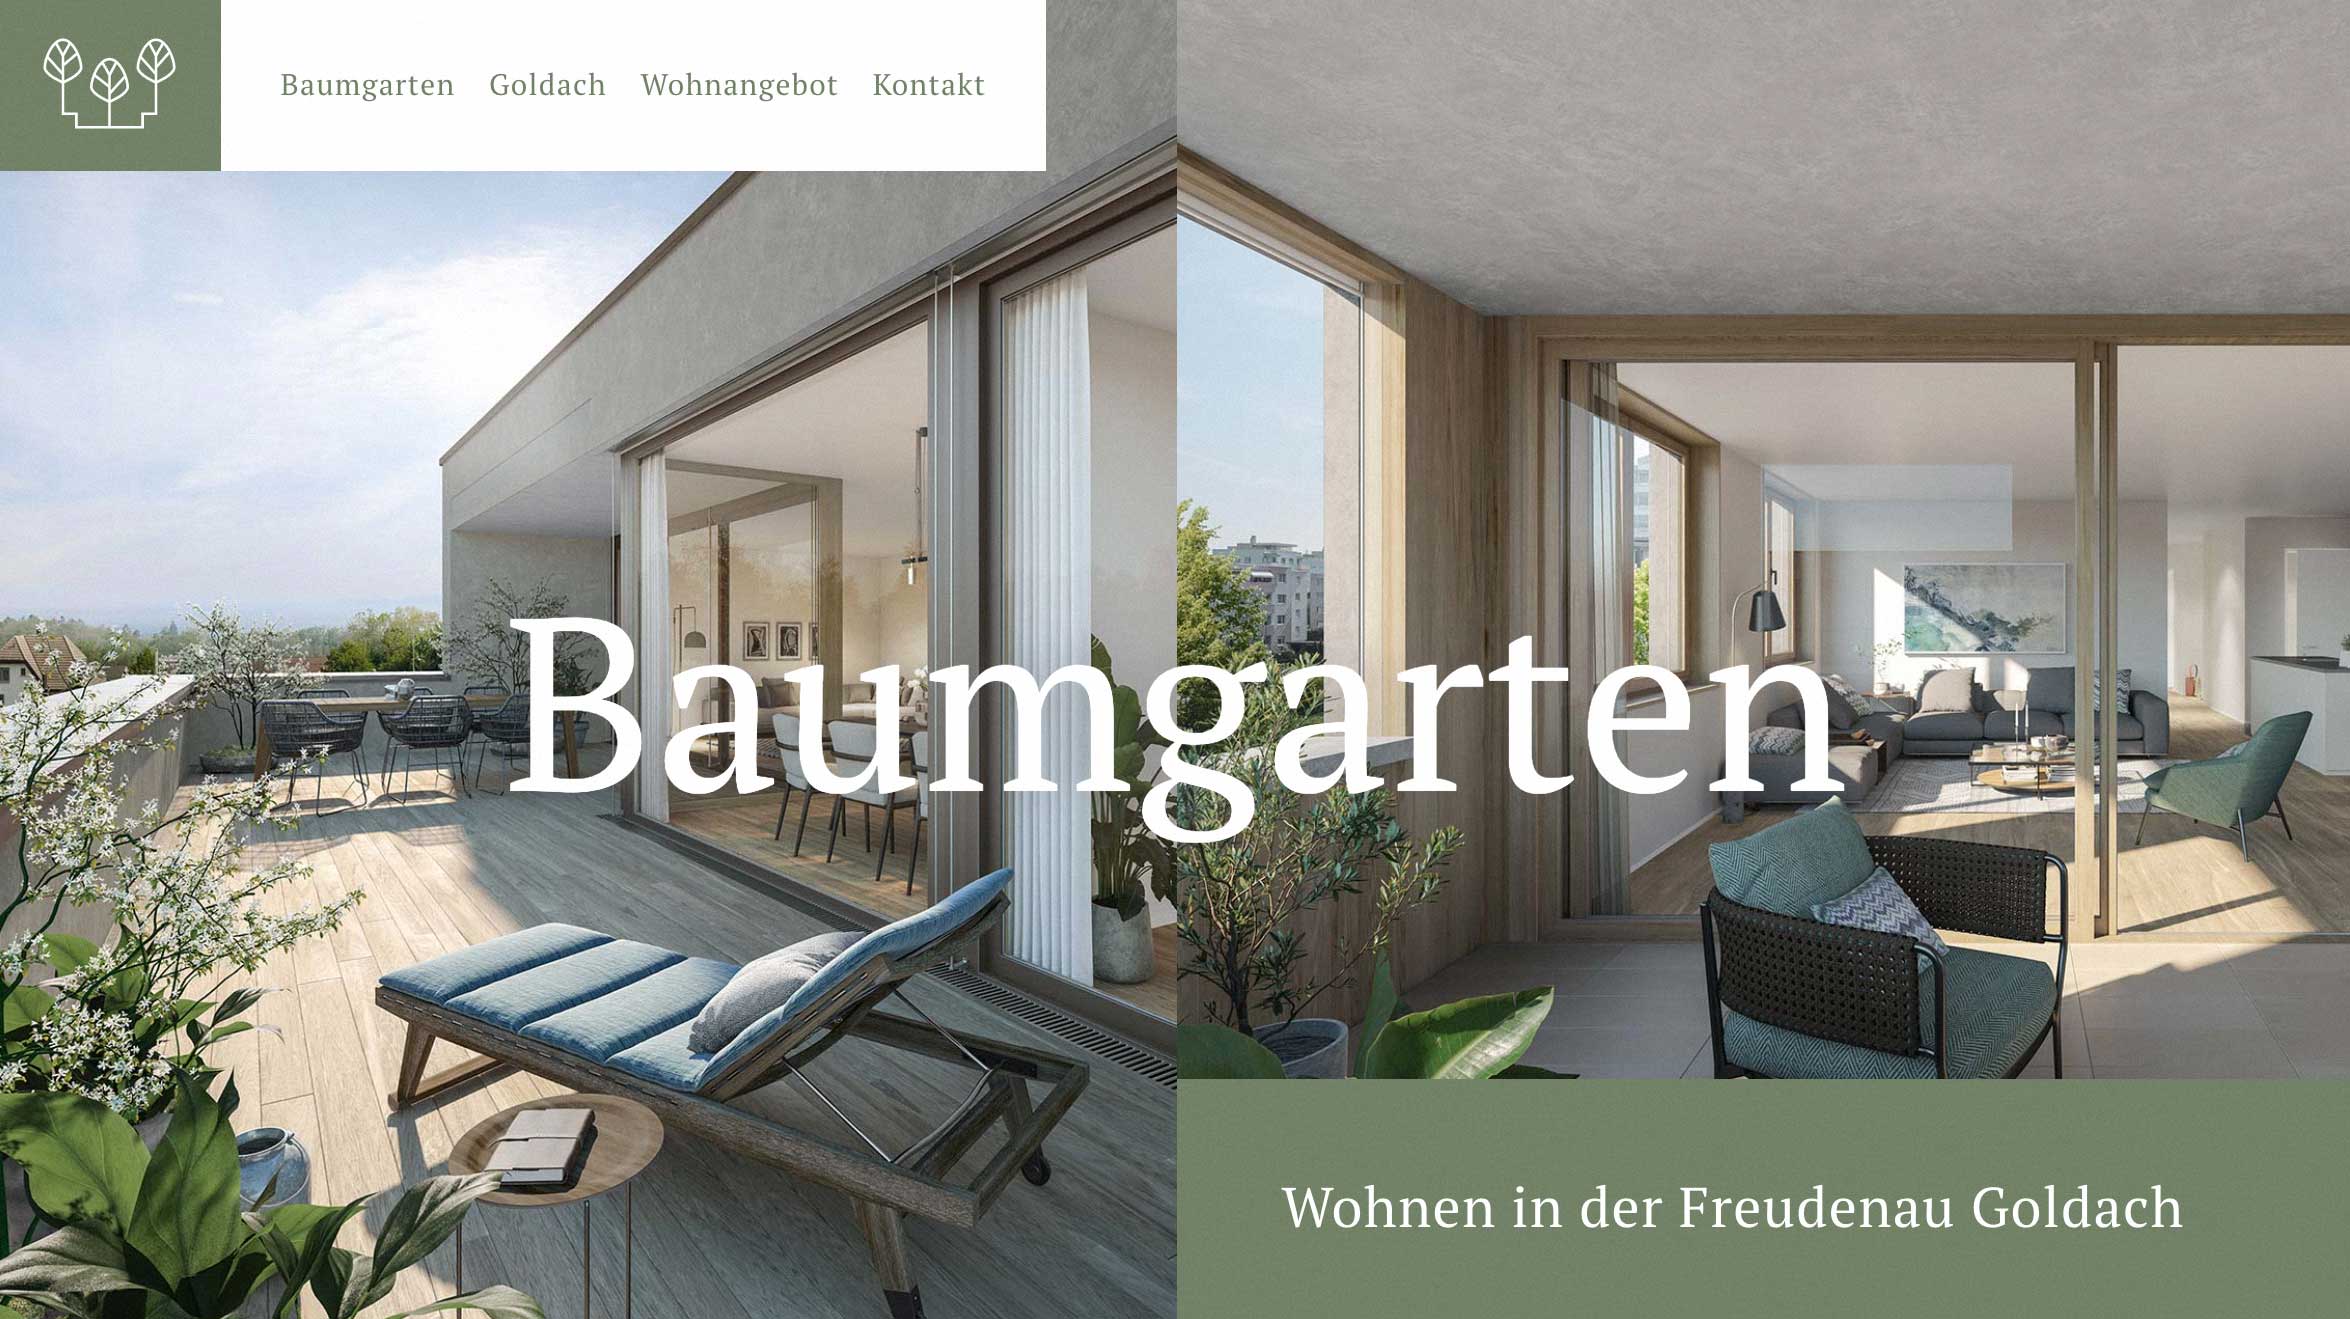 Baumgarten Goldach Webdesign, ansicht der Startseite mit Visualisierungen von Innen- und Aussenbereich, mit Logo und Typografie und dem Spruch Wohnen in der Freudenau Goldach.